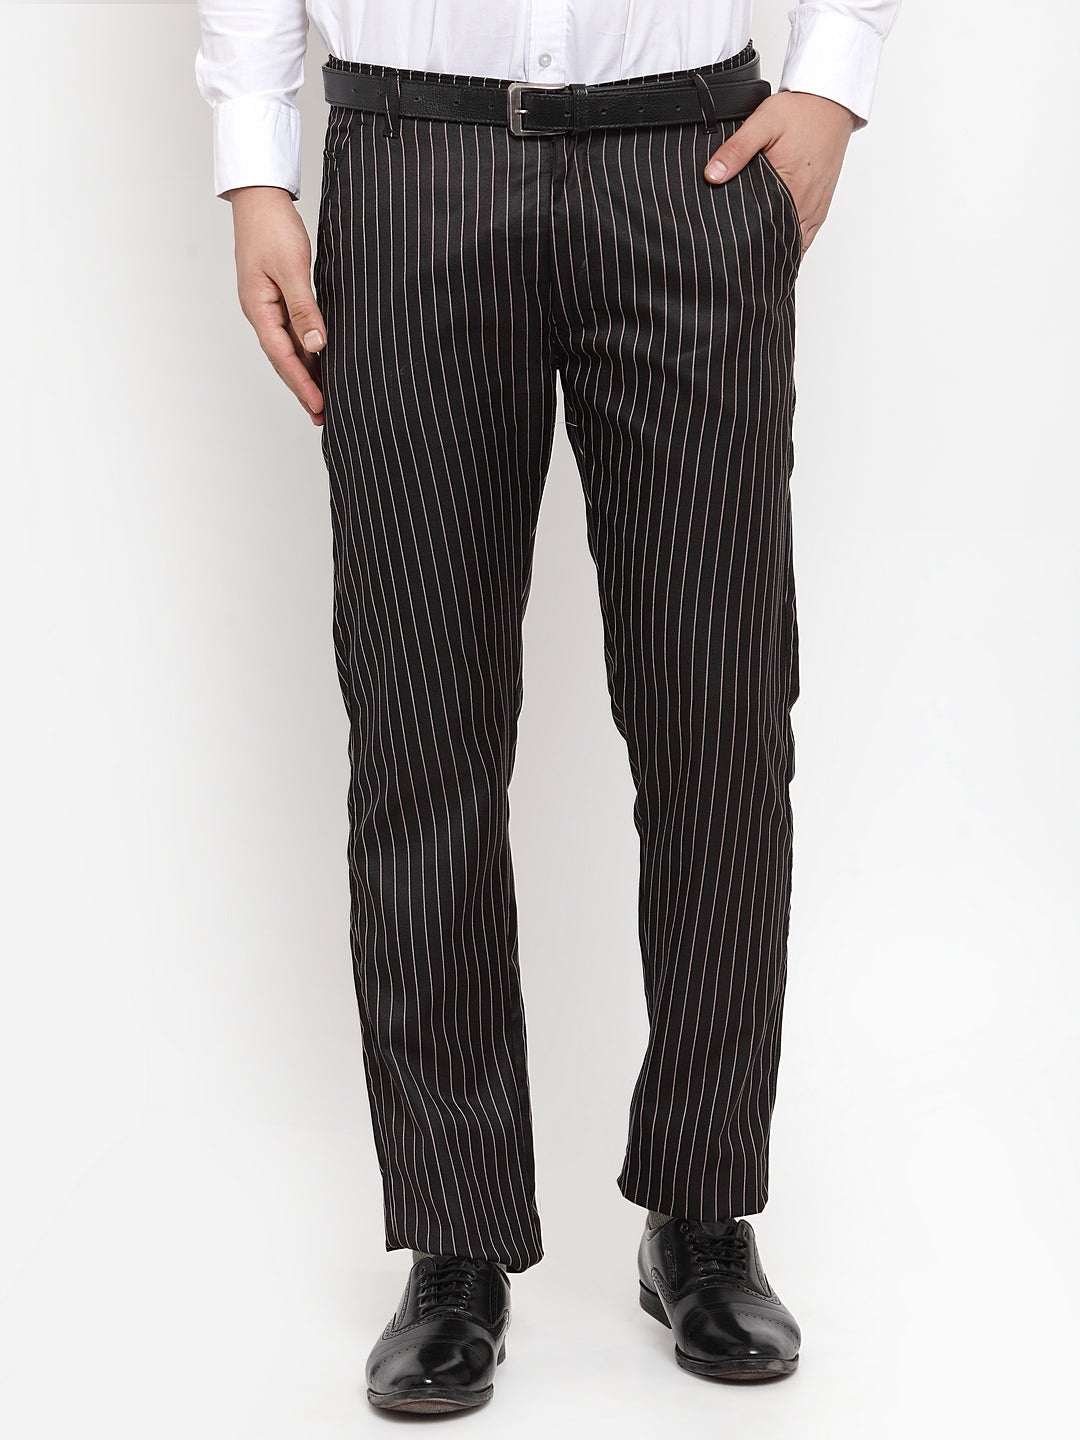 Men's Black Cotton Striped Formal Trousers ( FGP 255Black ) - Jainish